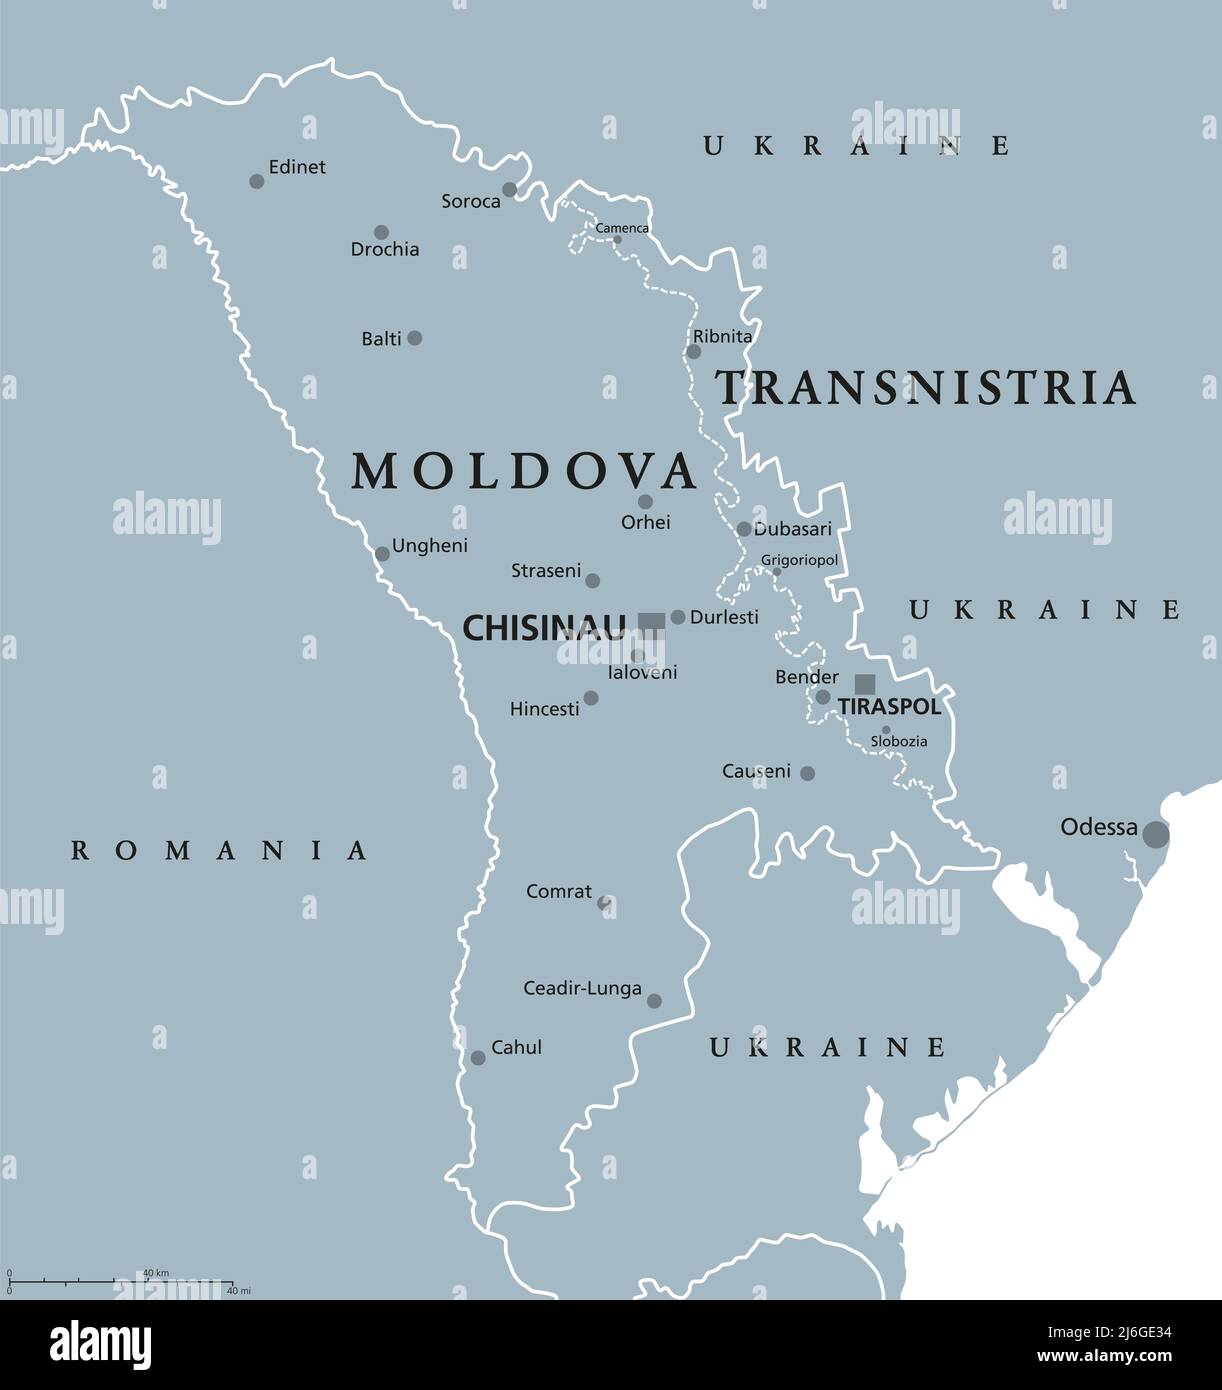 Moldova and Transnistria, gray political map. Republic of Moldova, with capital Chisinau, and Pridnestrovian Moldavian Republic, PMR. Stock Photo